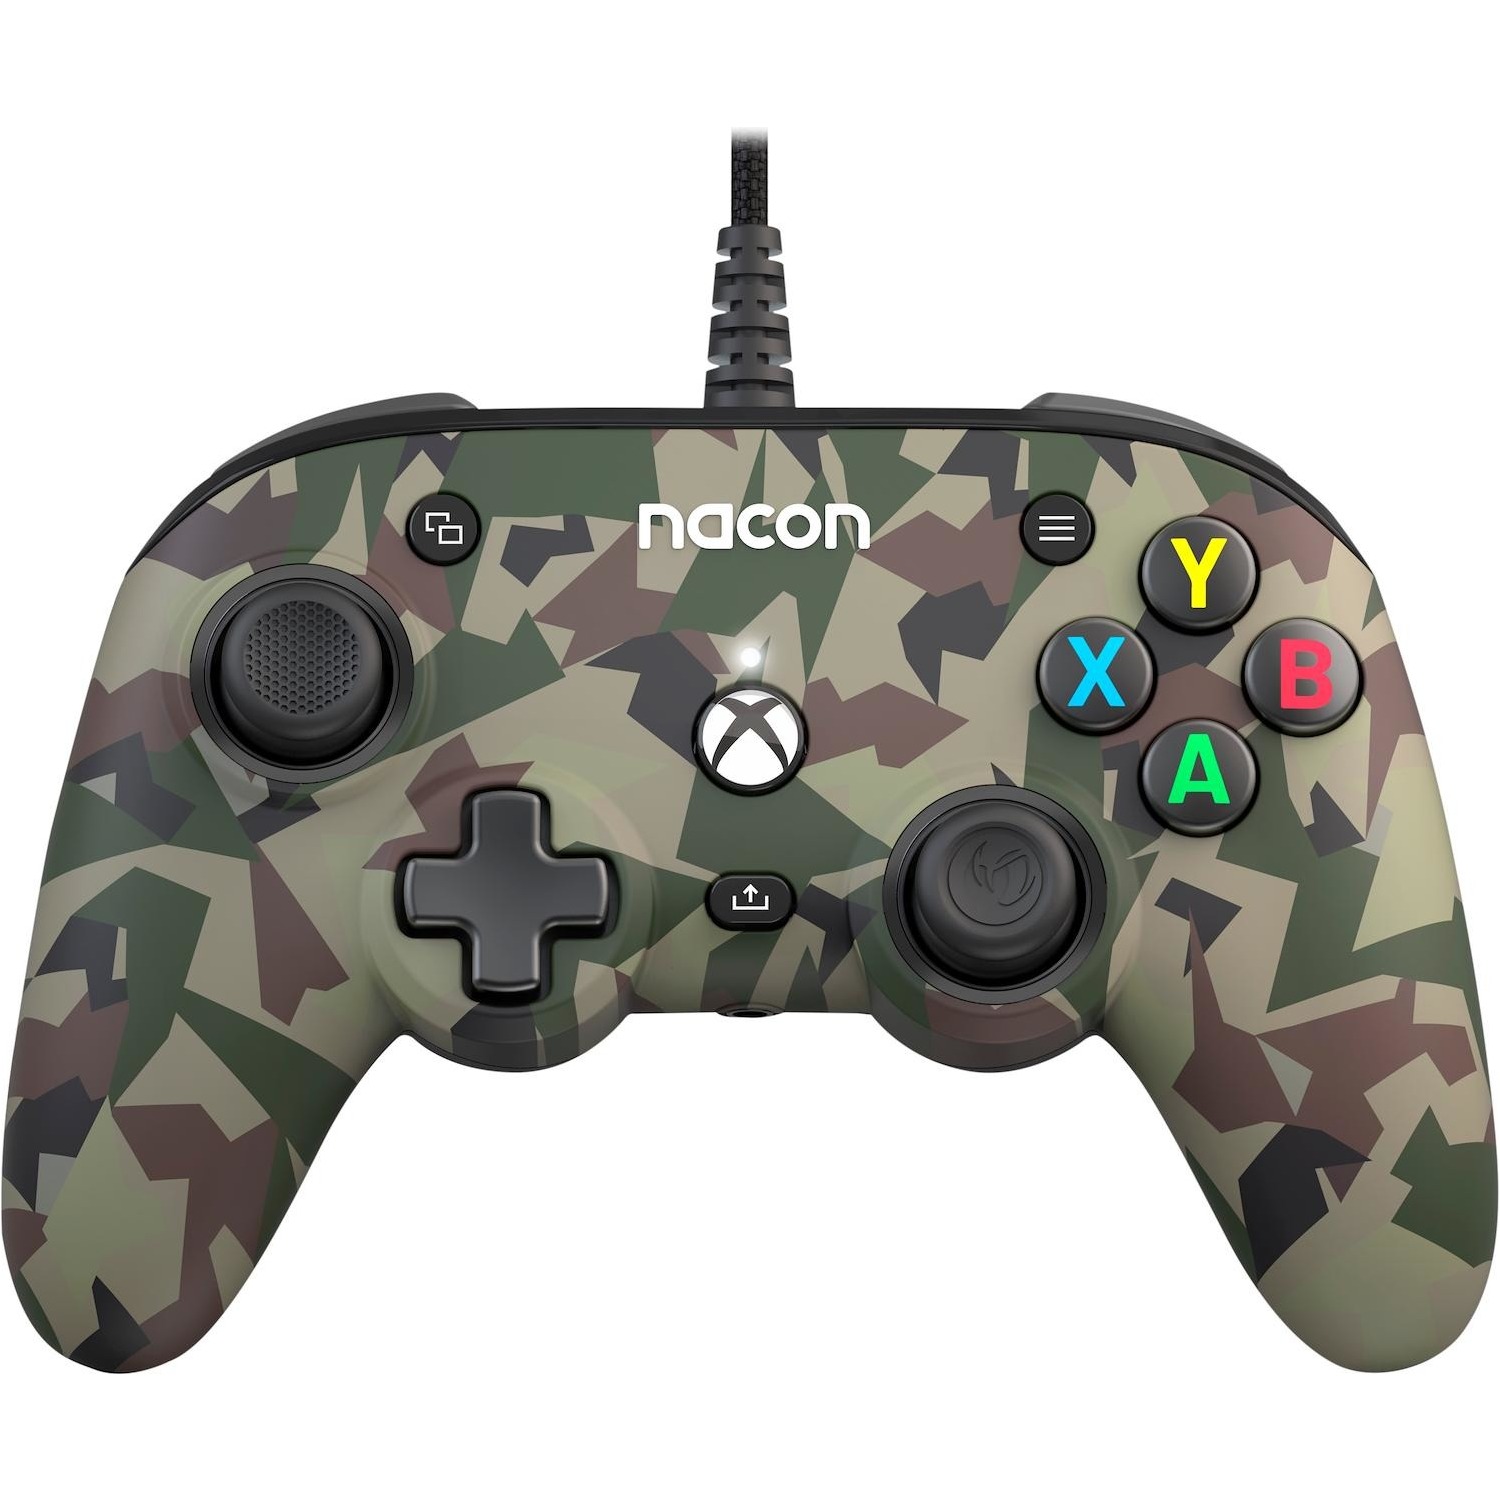 Immagine per Nacon XBOX ProCompact Controller Camo Green Wired controller gaming da DIMOStore